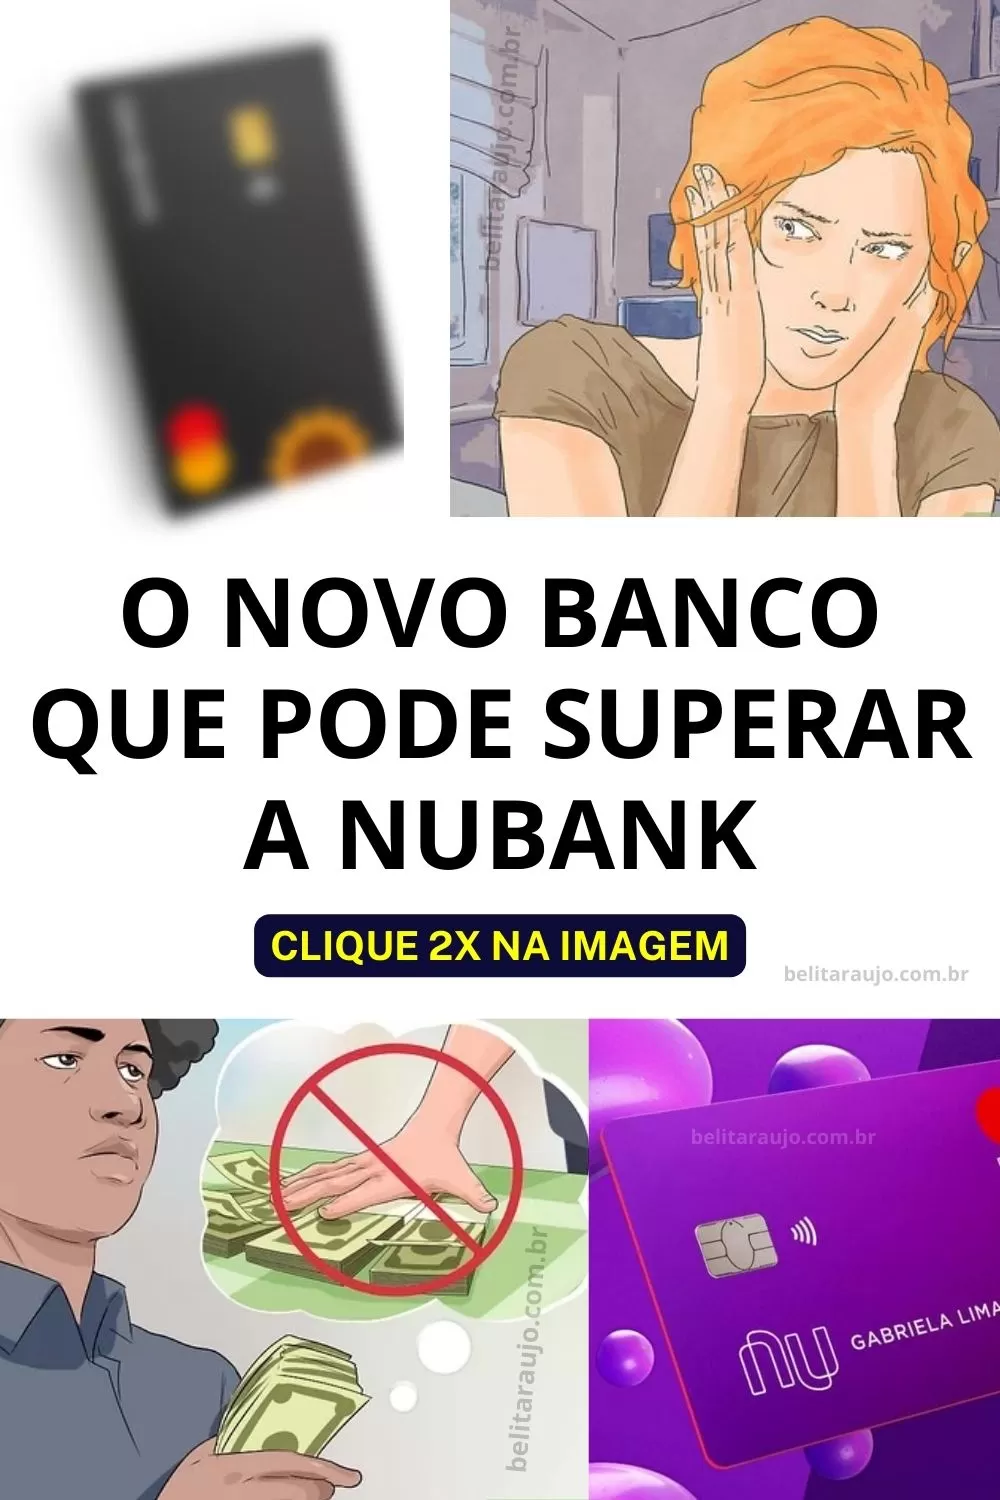 Girabank- O novo banco que pode superar a Nubank; Será?